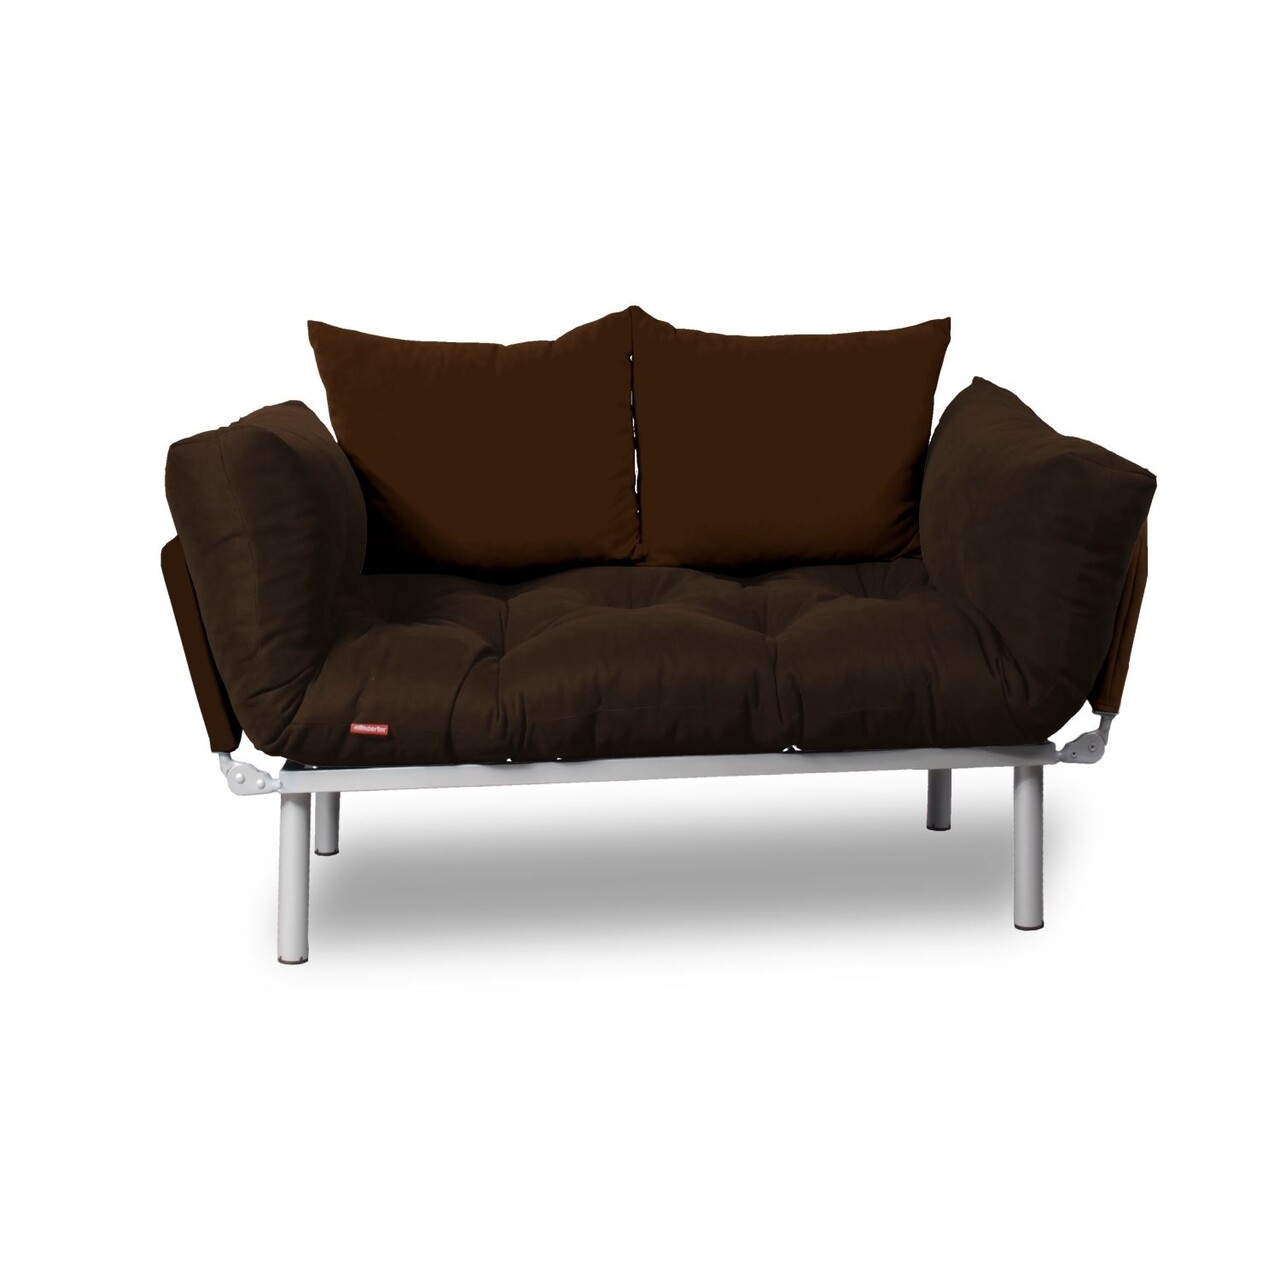 Kihúzható kanapé gauge concept, brown, 2 személyes, 190x70 cm, vas/poliészter